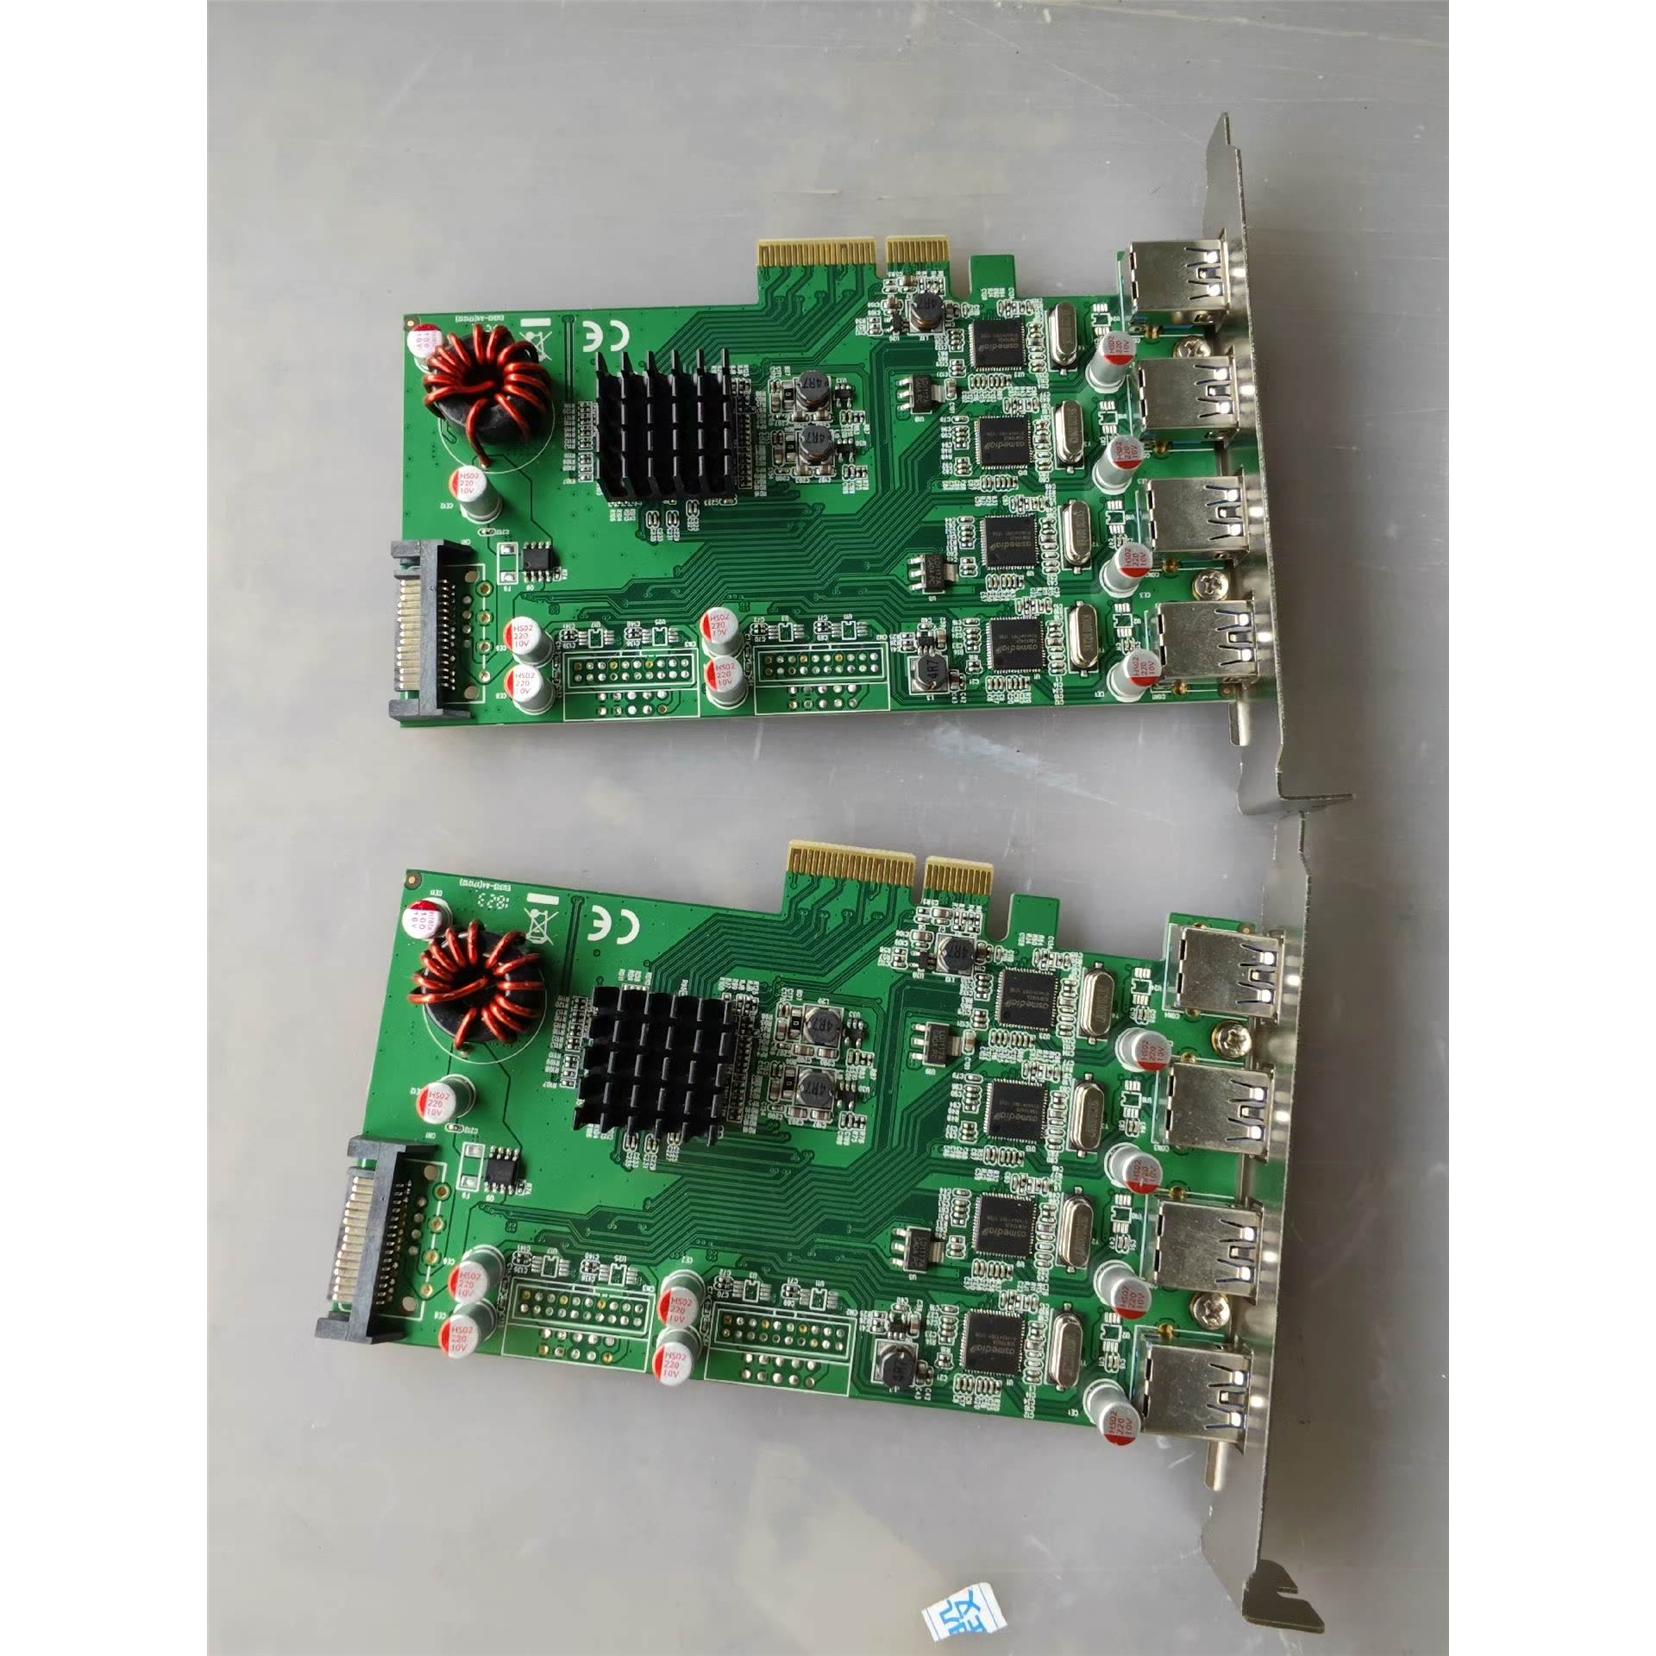 议价西霸SYBA FG-EU348-2高速USB3扩展卡， 电子元器件市场 其它元器件 原图主图